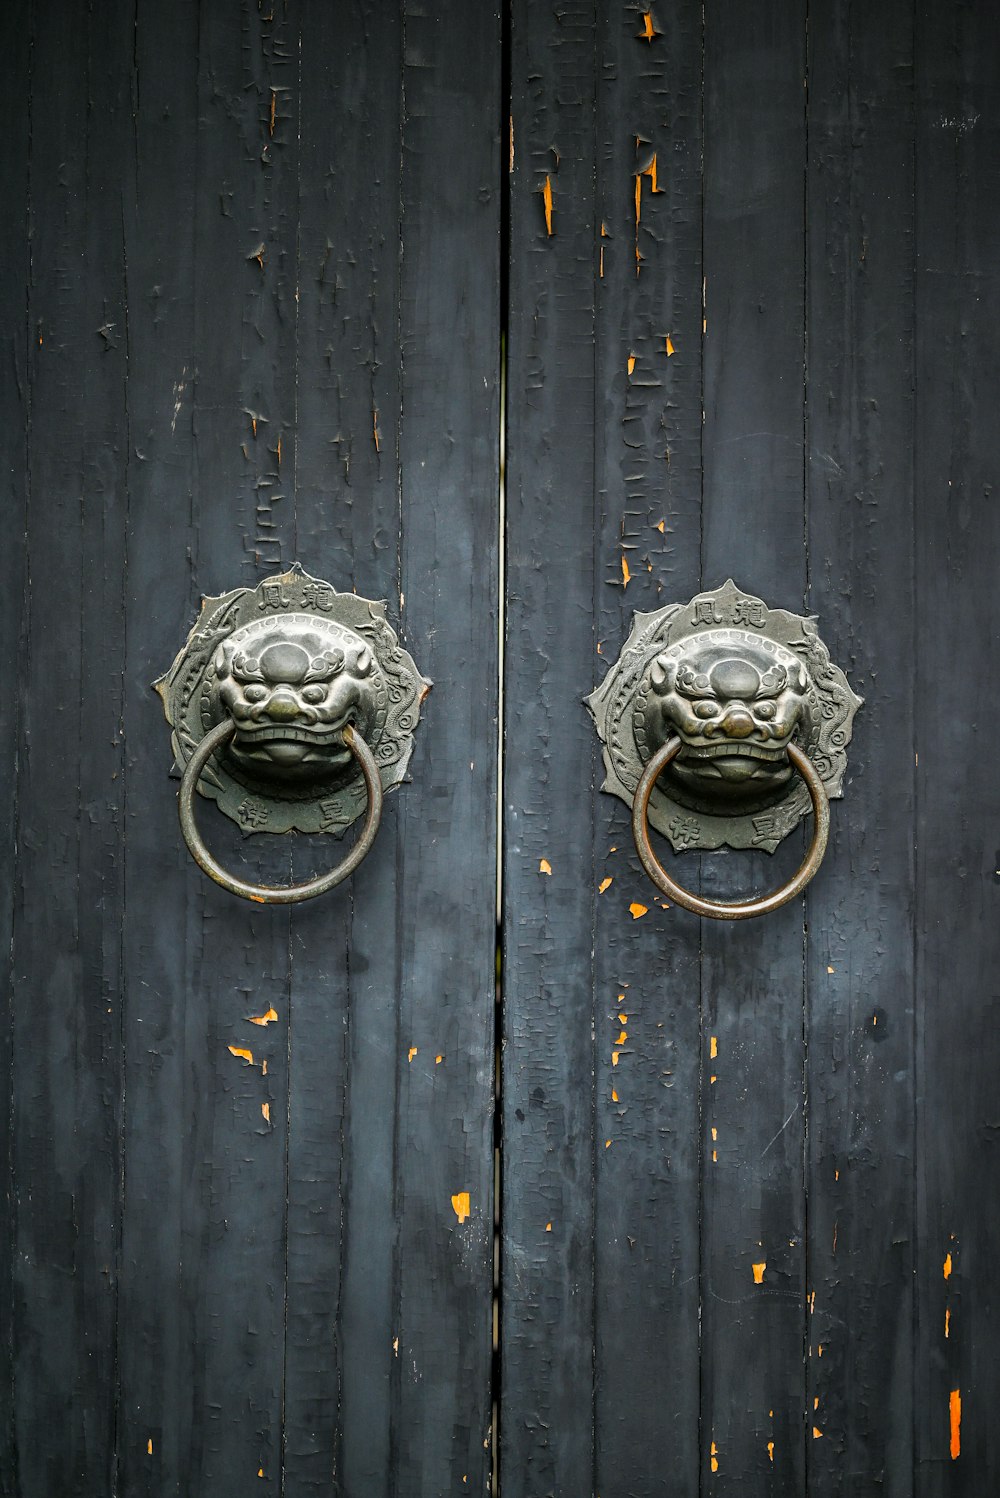 a close up of a metal door handle on a wooden door